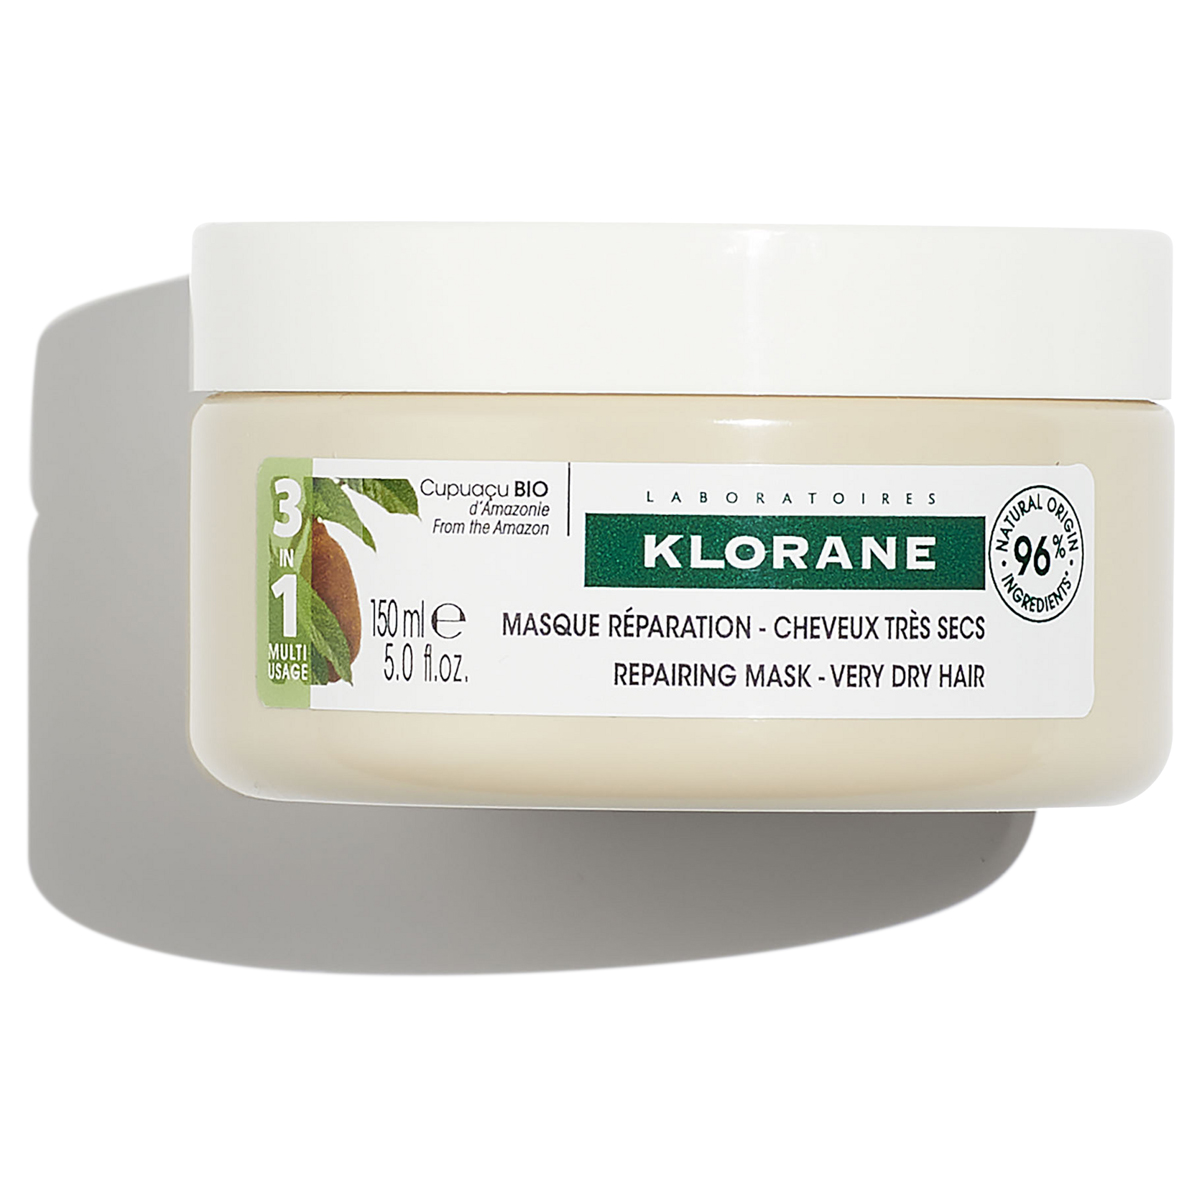 Купить Восстанавливающая маска для волос 3 в 1 Klorane с органическим маслом Купуасу 150 мл